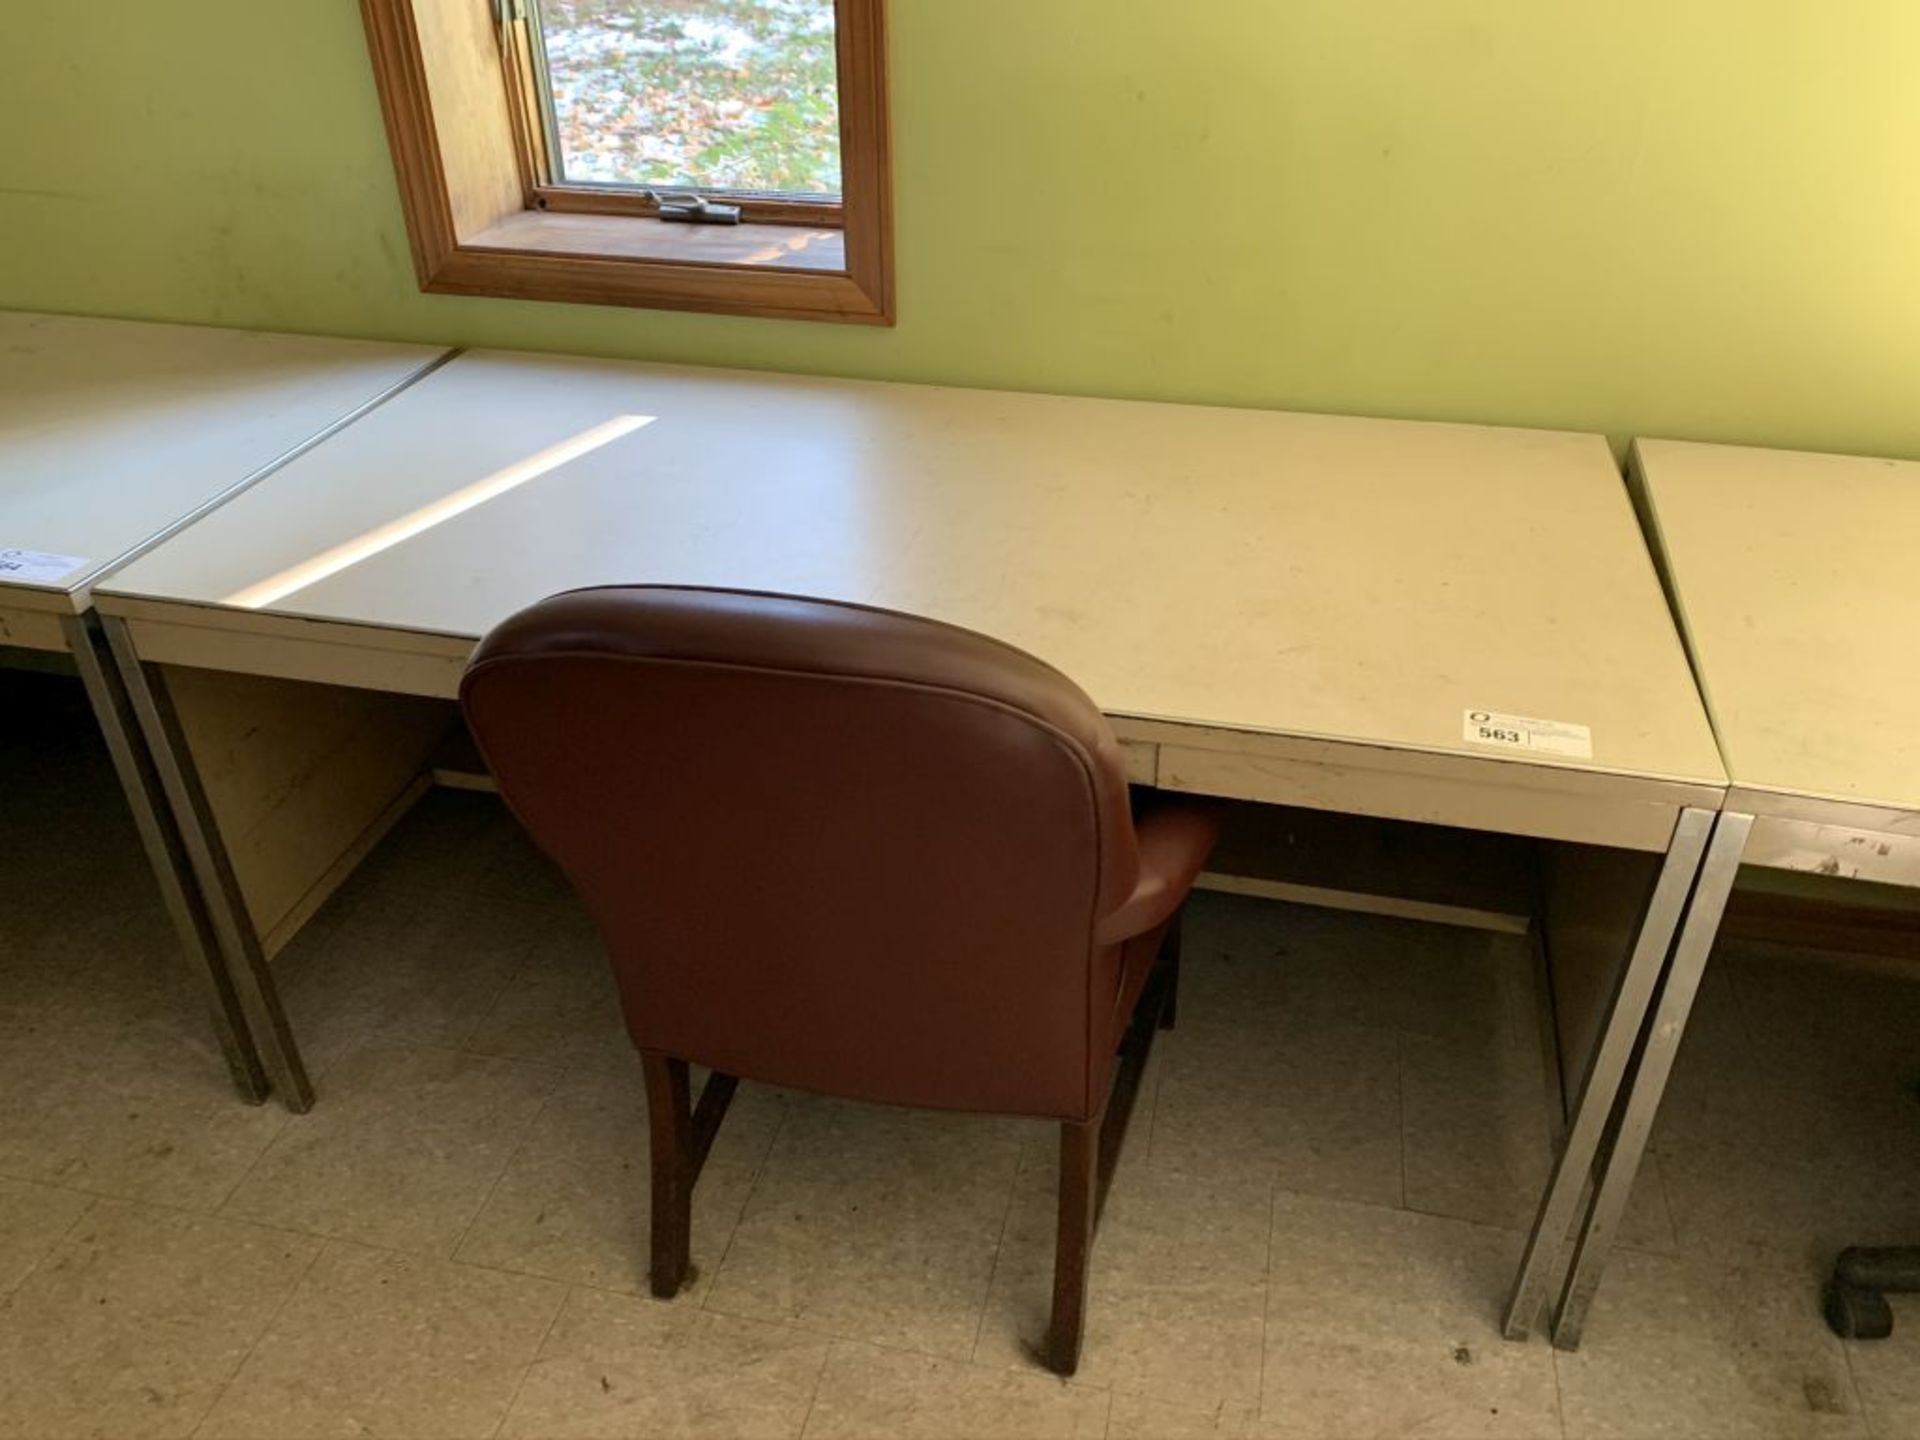 Desk & Chair, 30" x 60" x 29"